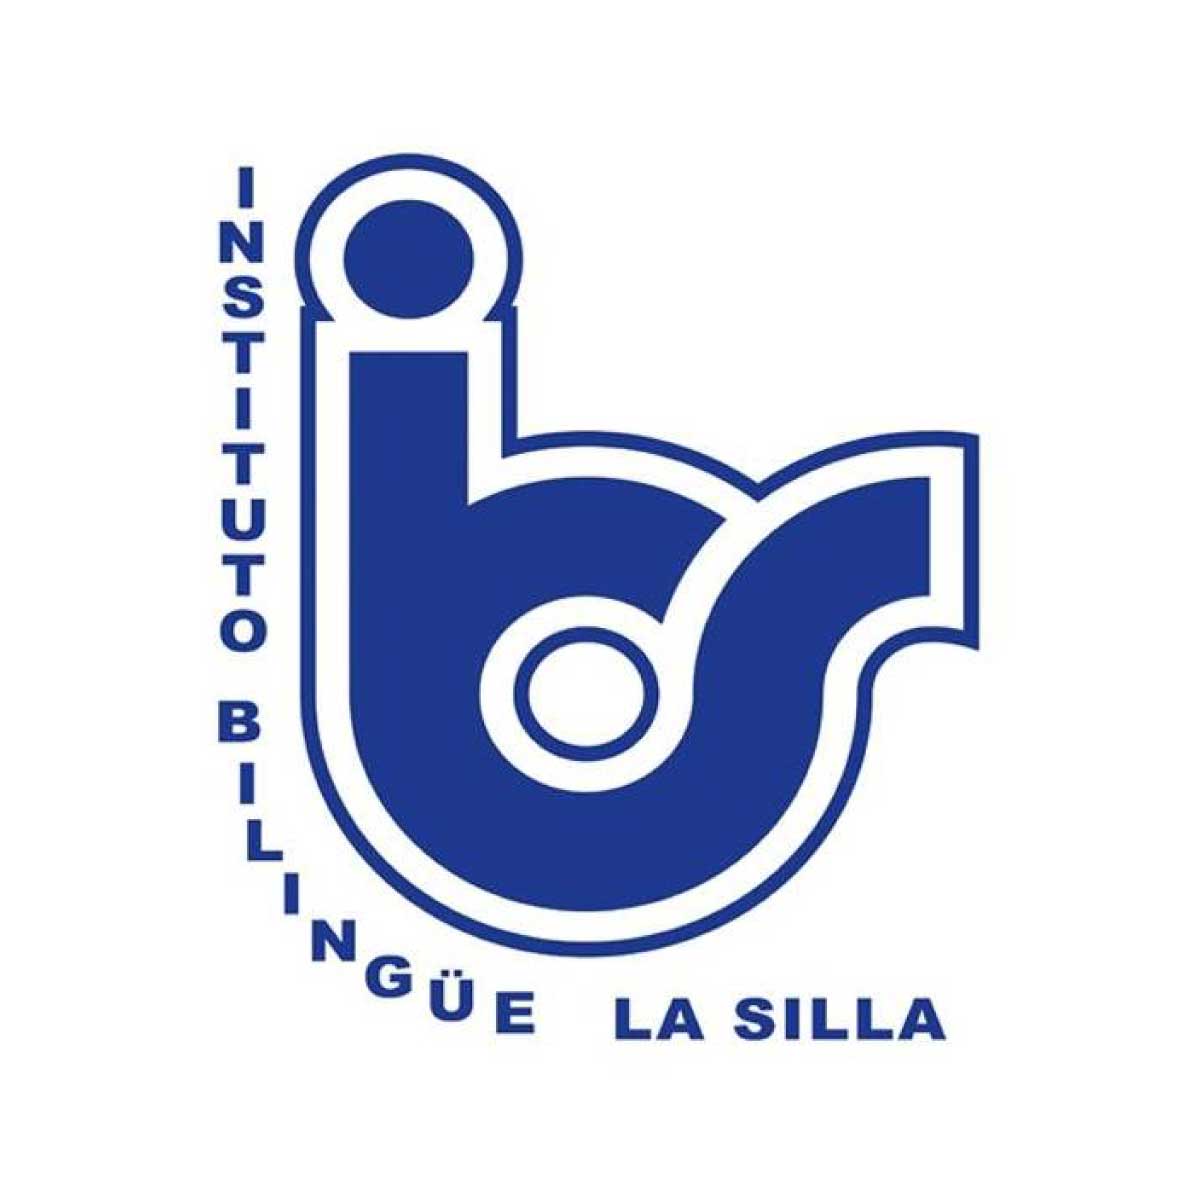 instituto bilingue la silla logo